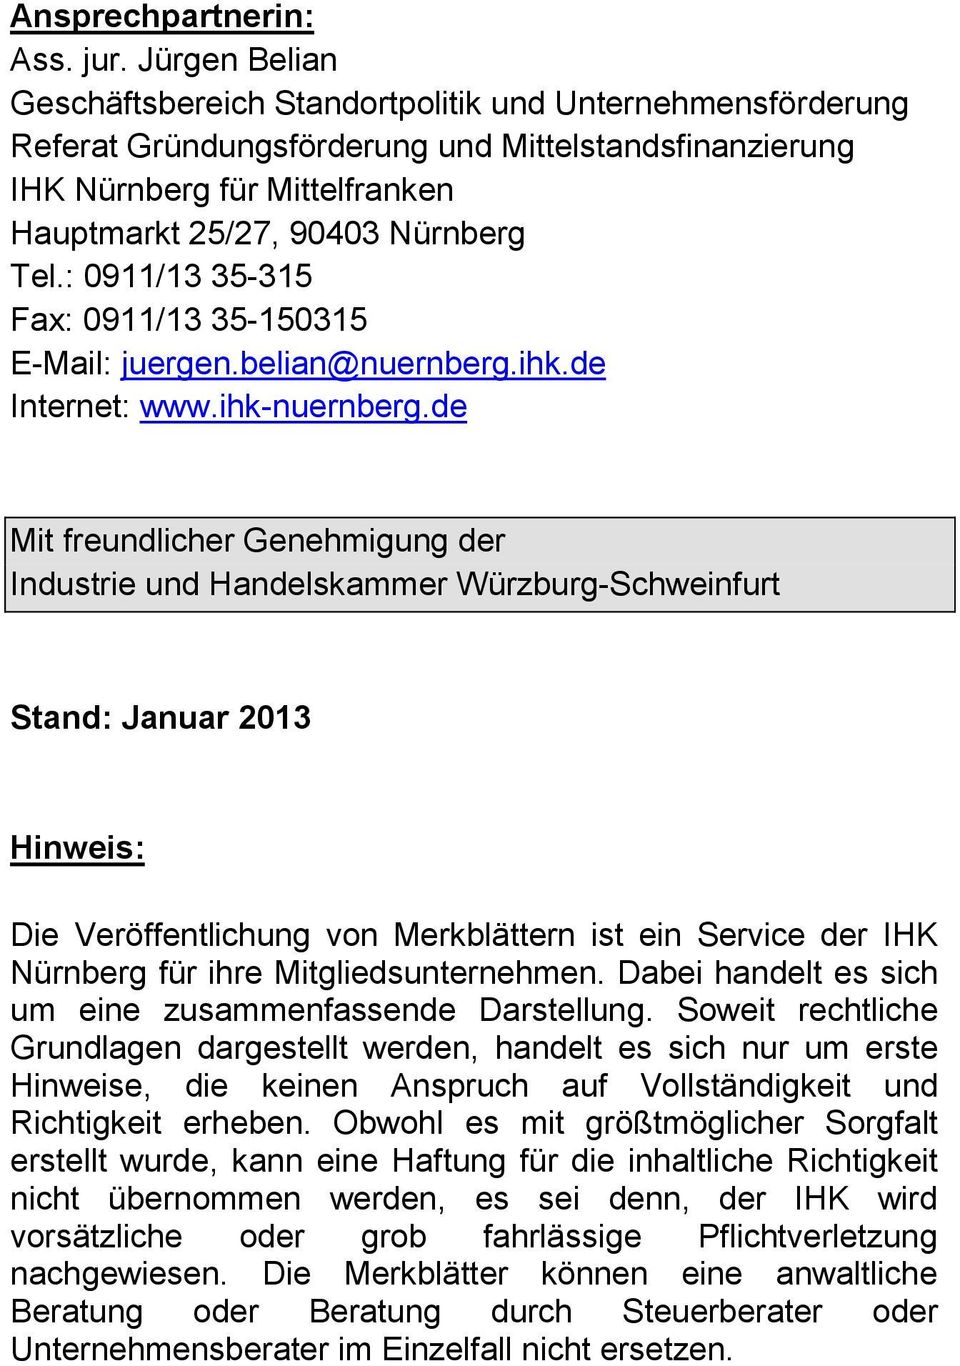 : 0911/13 35-315 Fax: 0911/13 35-150315 E-Mail: juergen.belian@nuernberg.ihk.de Internet: www.ihk-nuernberg.